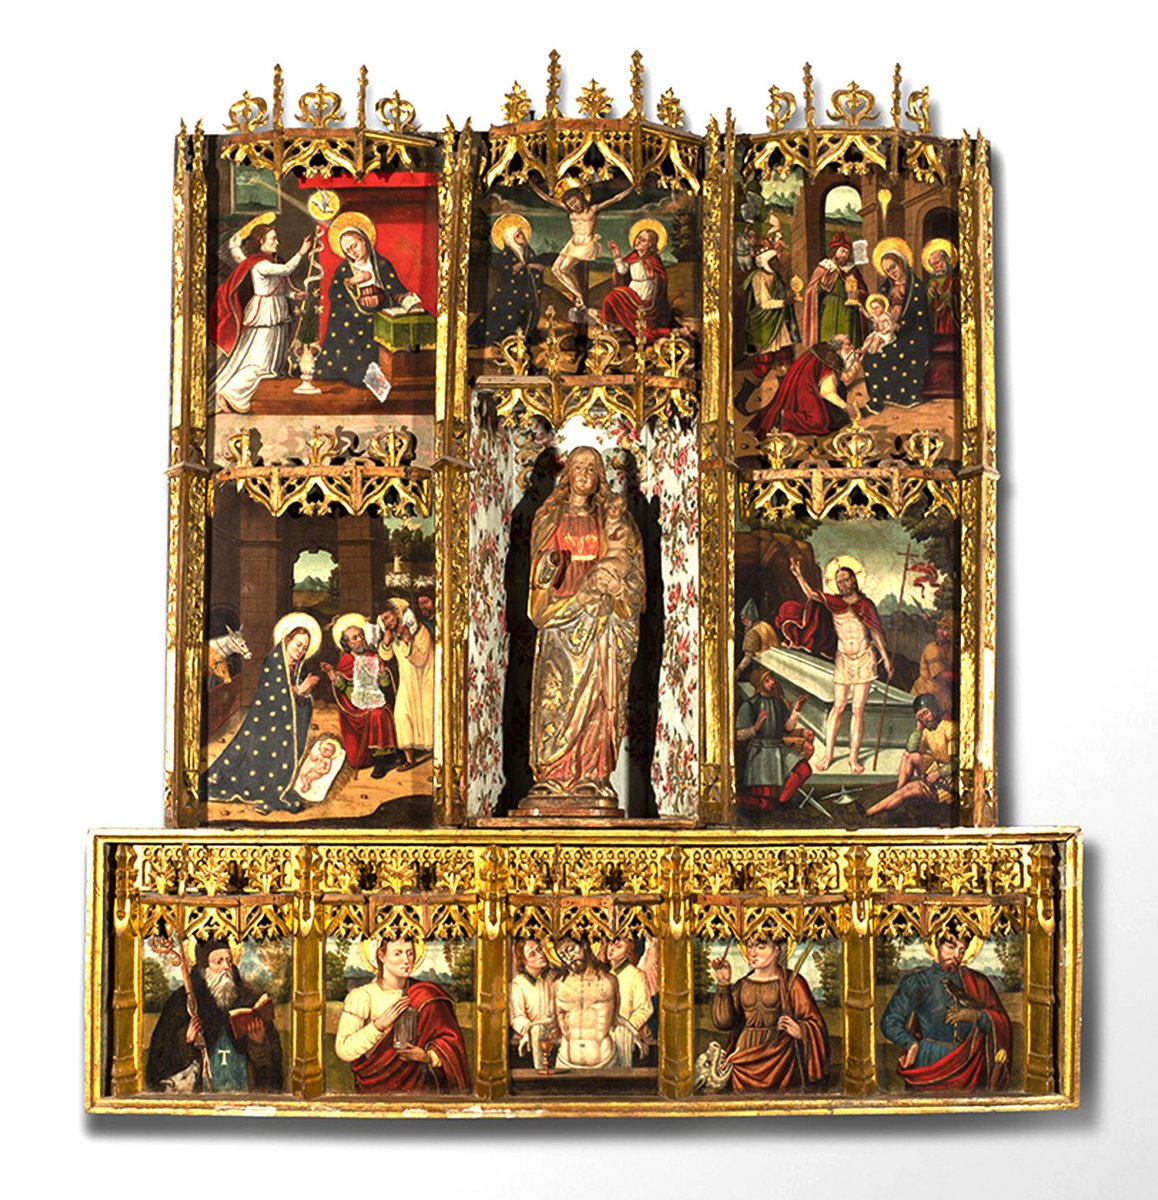 El retaule està exposat al vestíbul del Museu Diocesà de Barcelona però no s'havia identificat com la peça d'Olzinelles